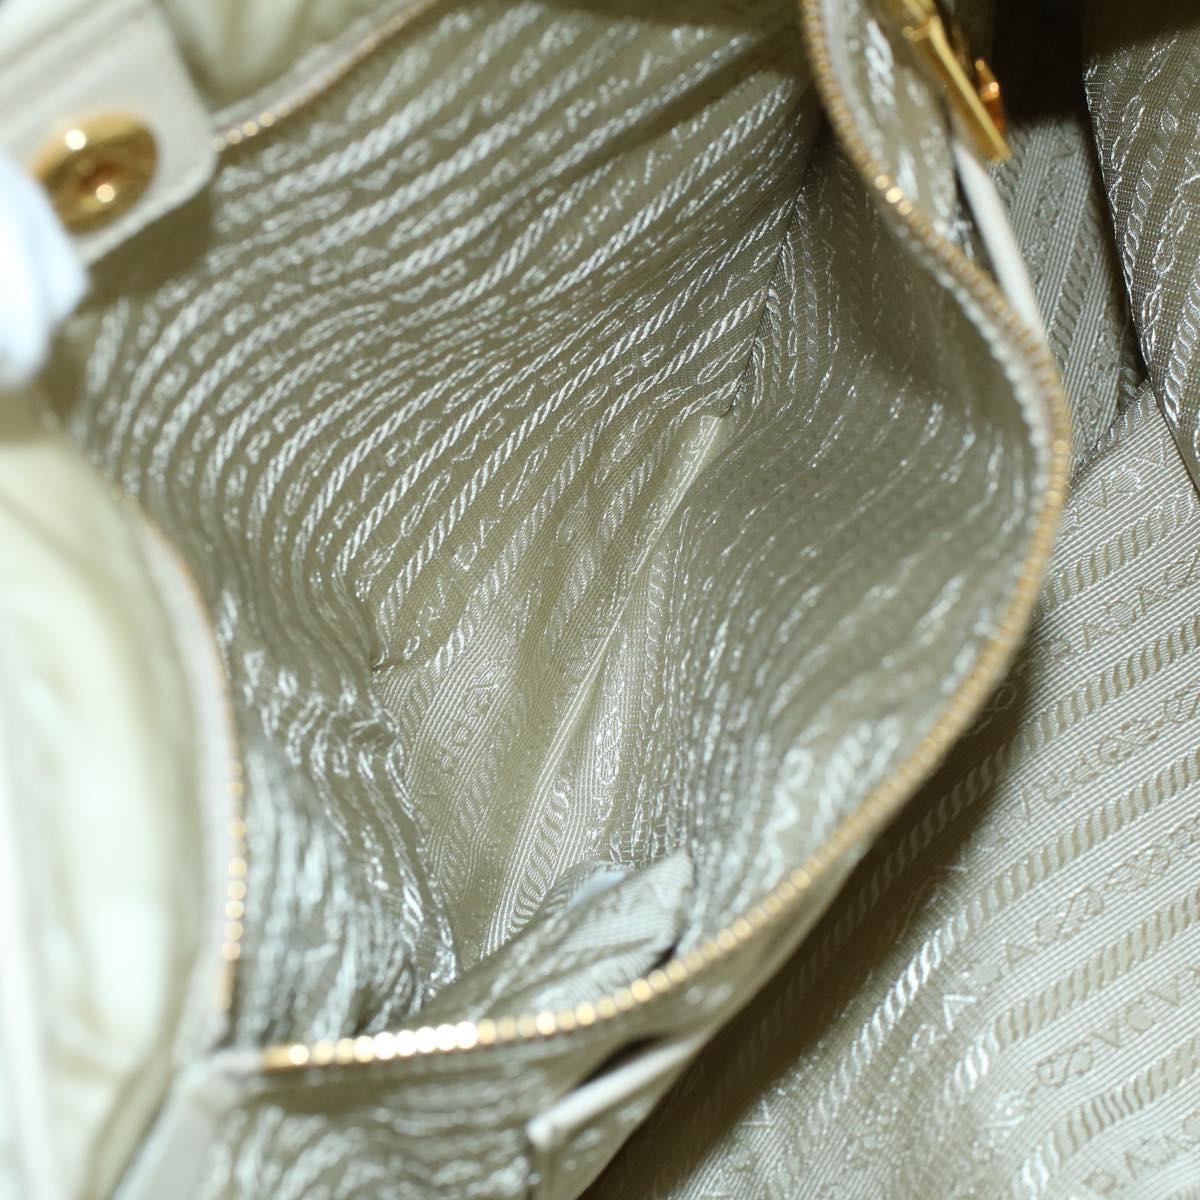 PRADA Tote Bag Nylon Leather Cream Auth 53846